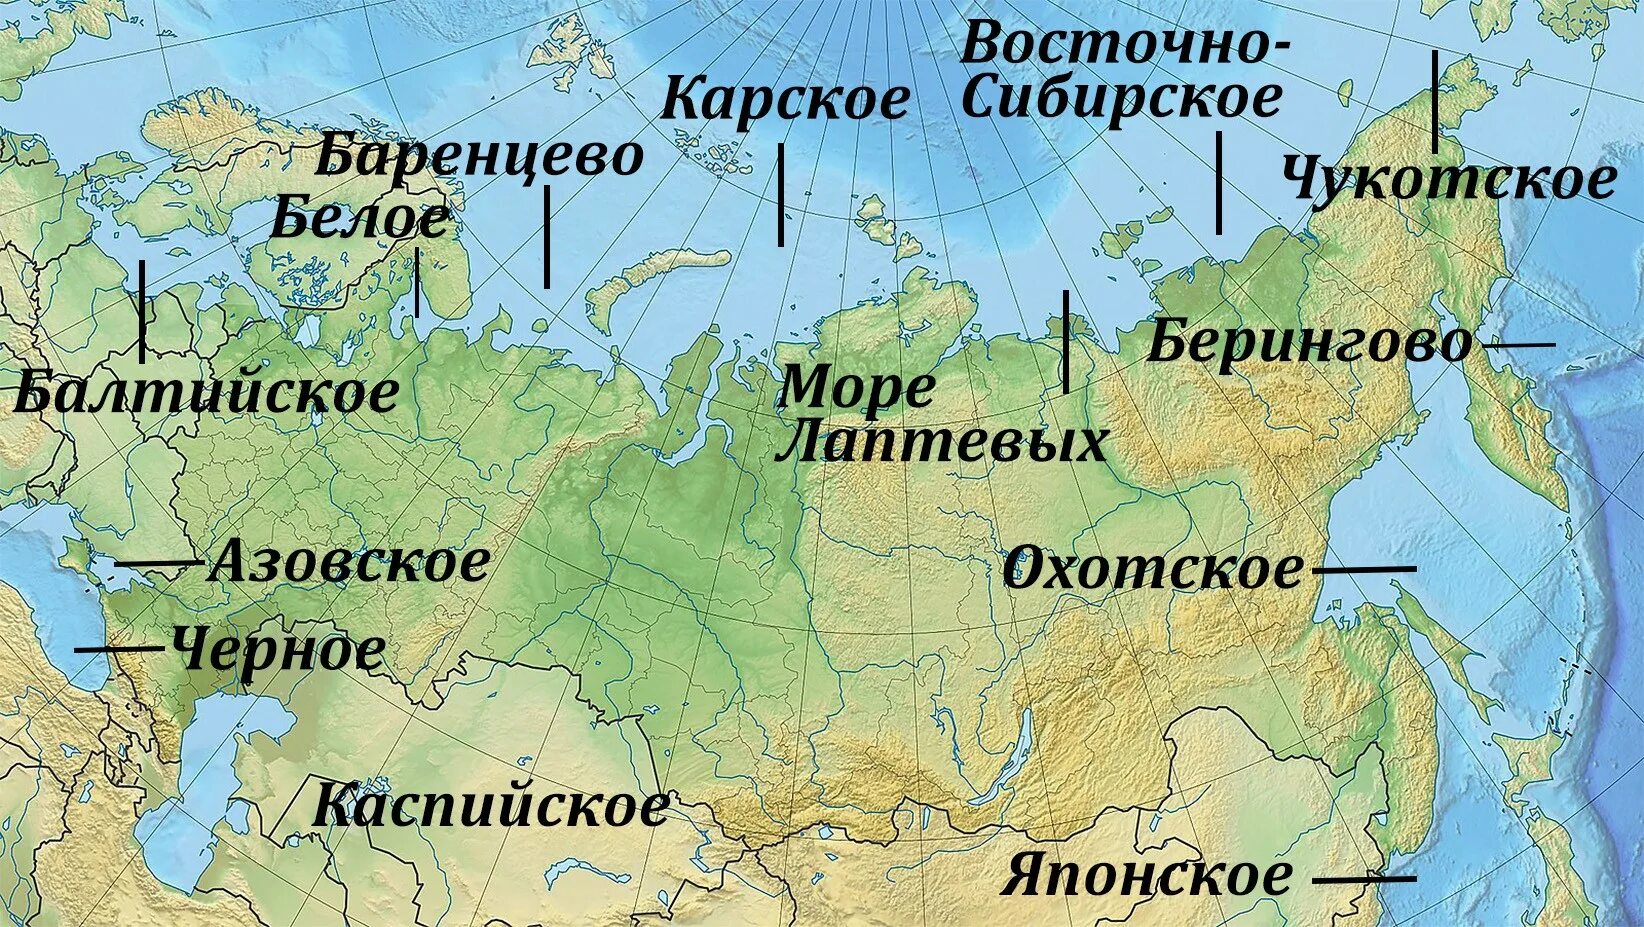 3 океана омывающие россию. Моря и океаны омывающие Россию на карте. Моря омывающие Россию. Моря России на карте. Моря омывающие Россию на карте.